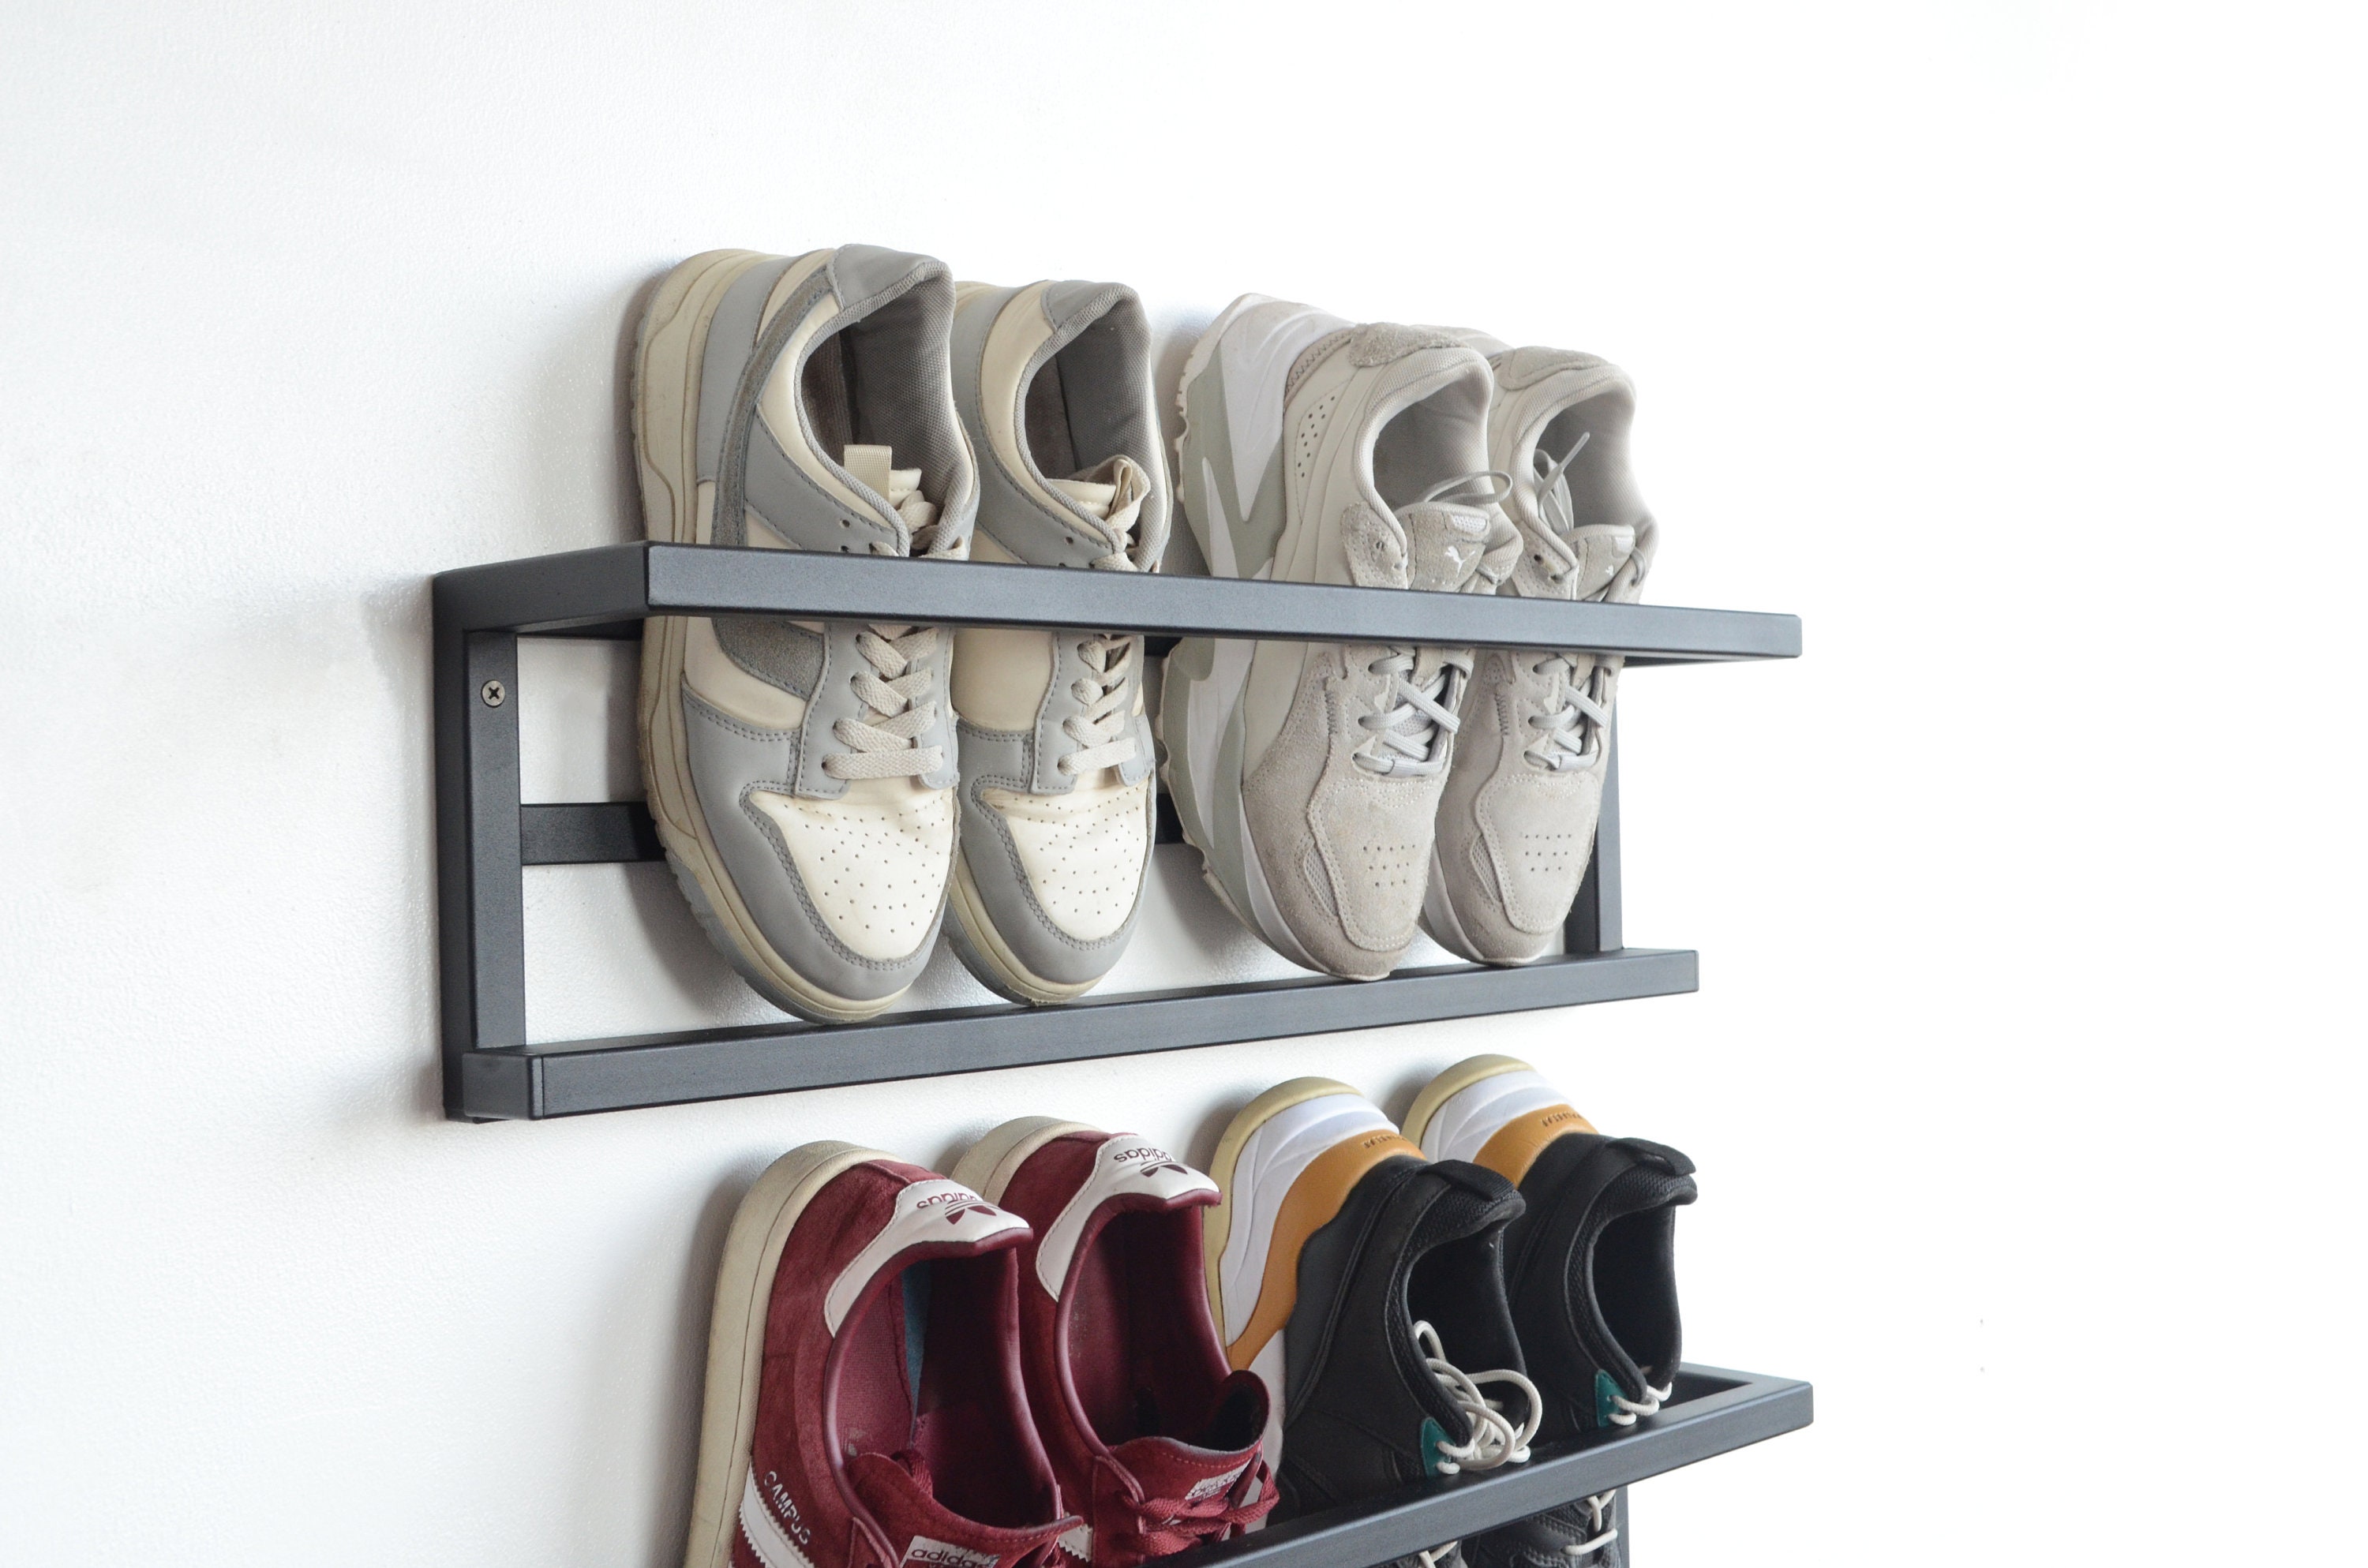 Industrial heavy duty shoe rack (Wall mounted) - Simplified Building